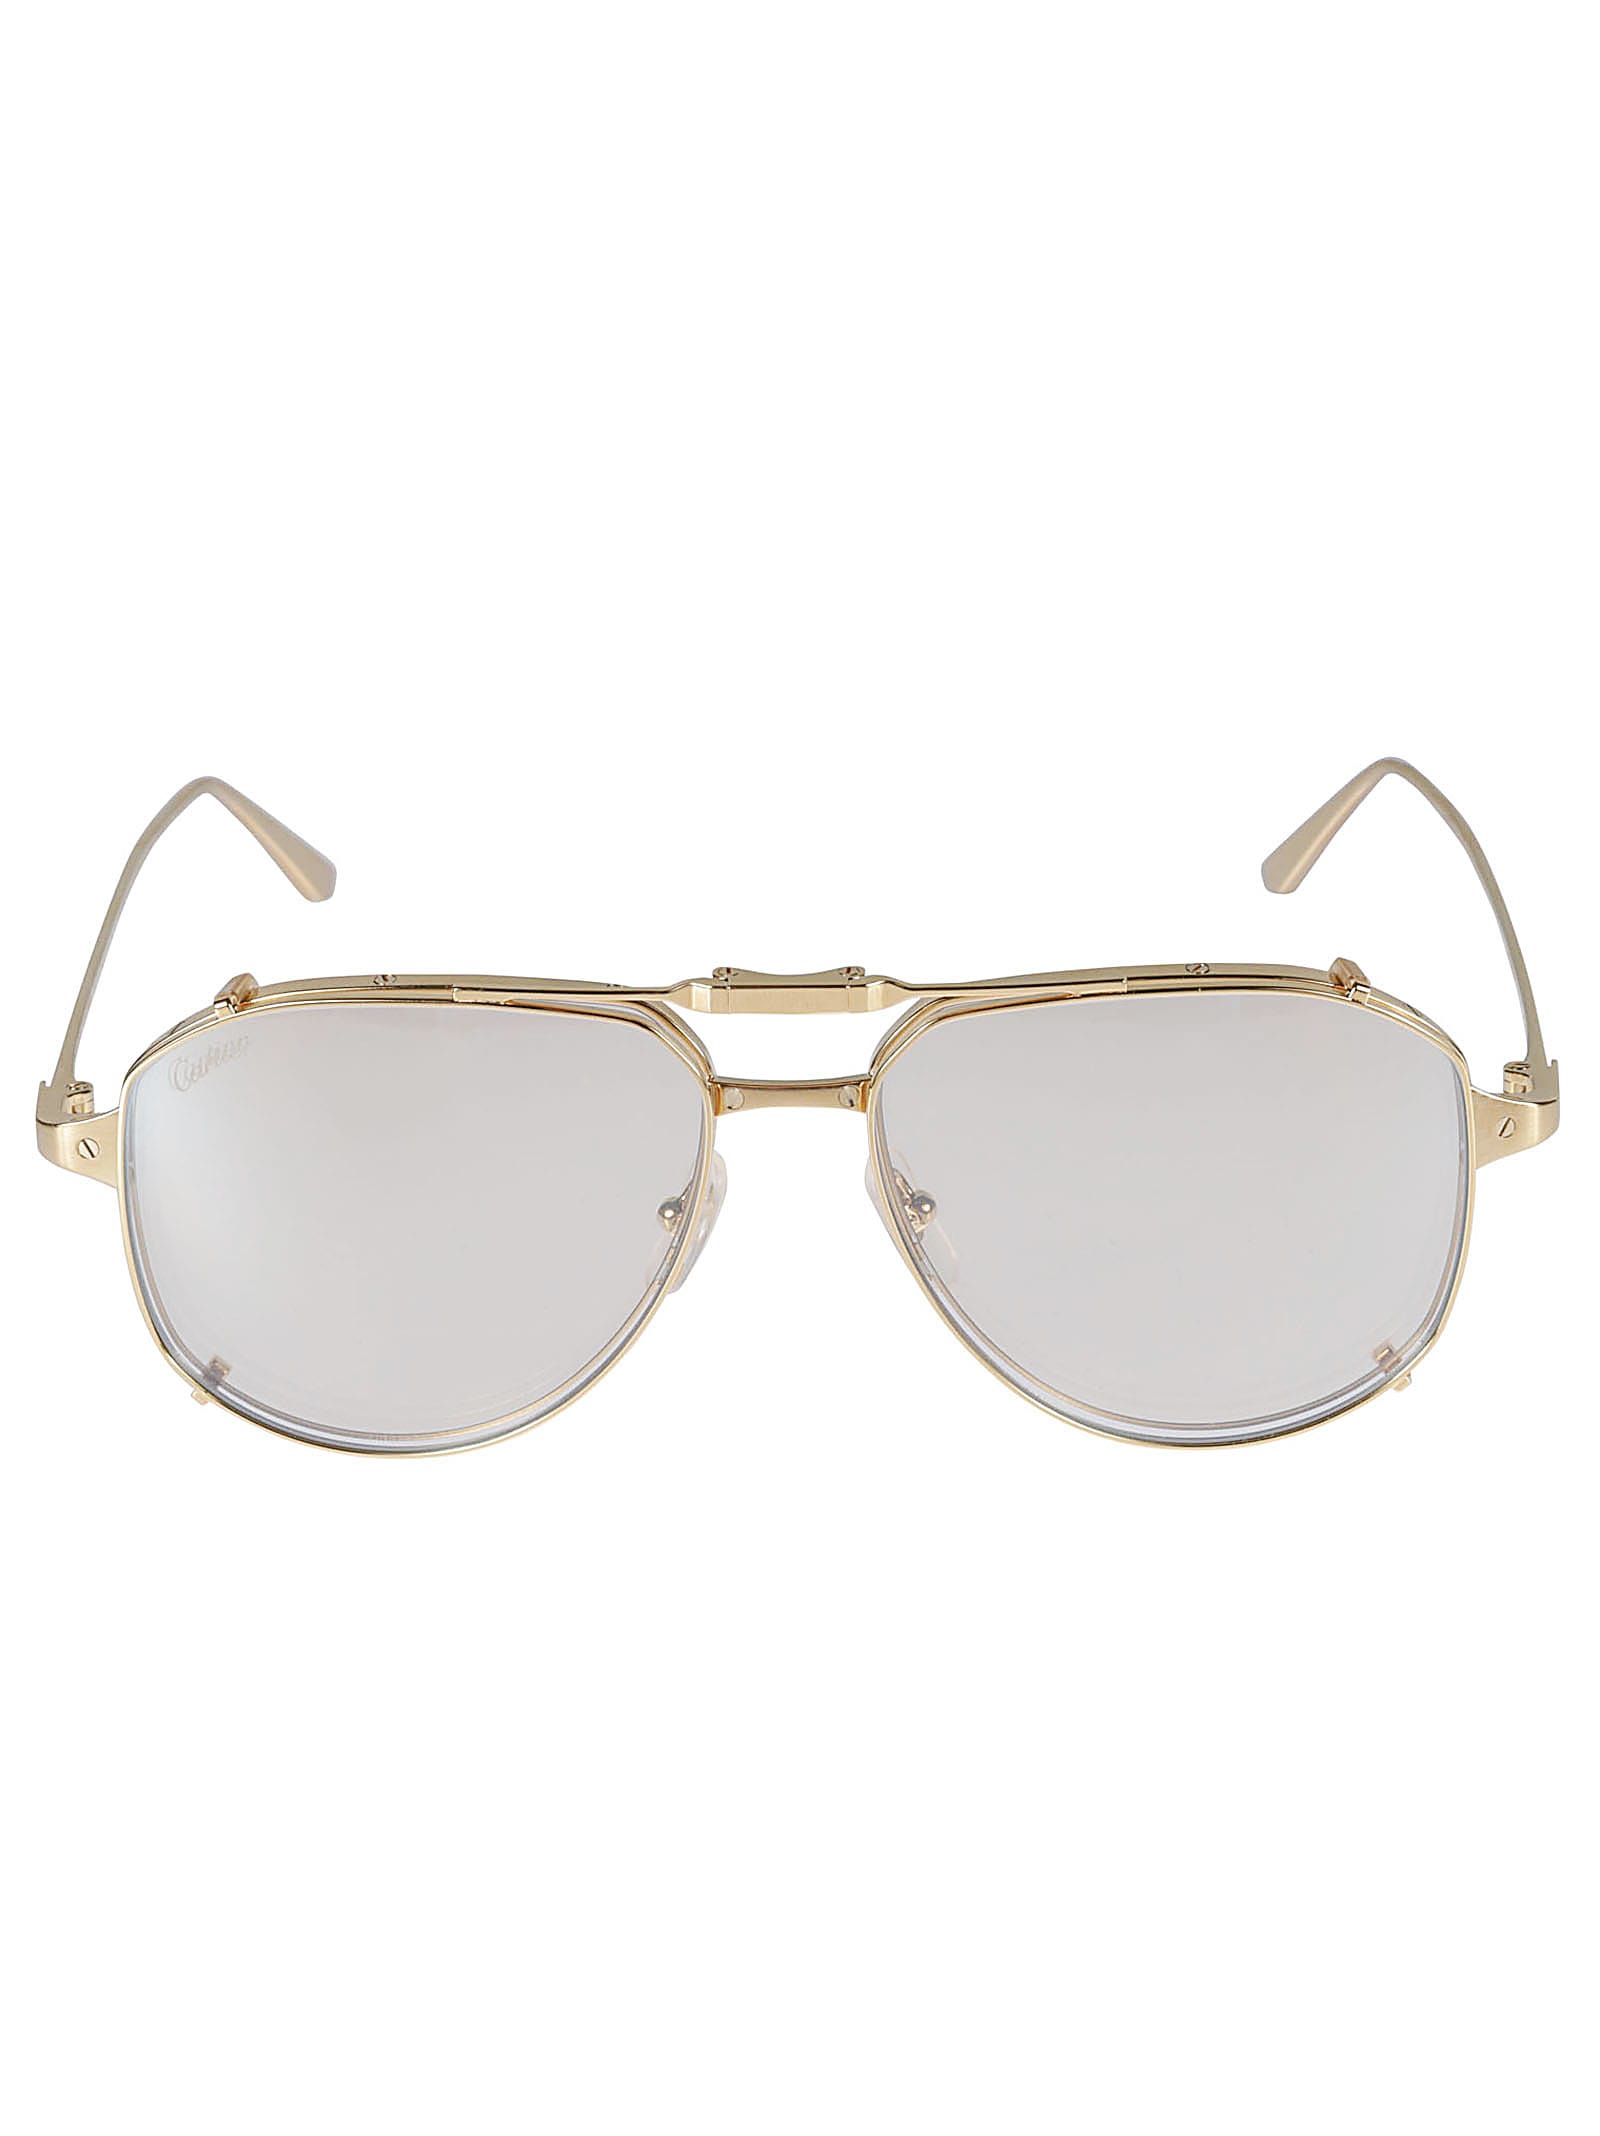 Cartier Santos De Glasses In Gold | ModeSens